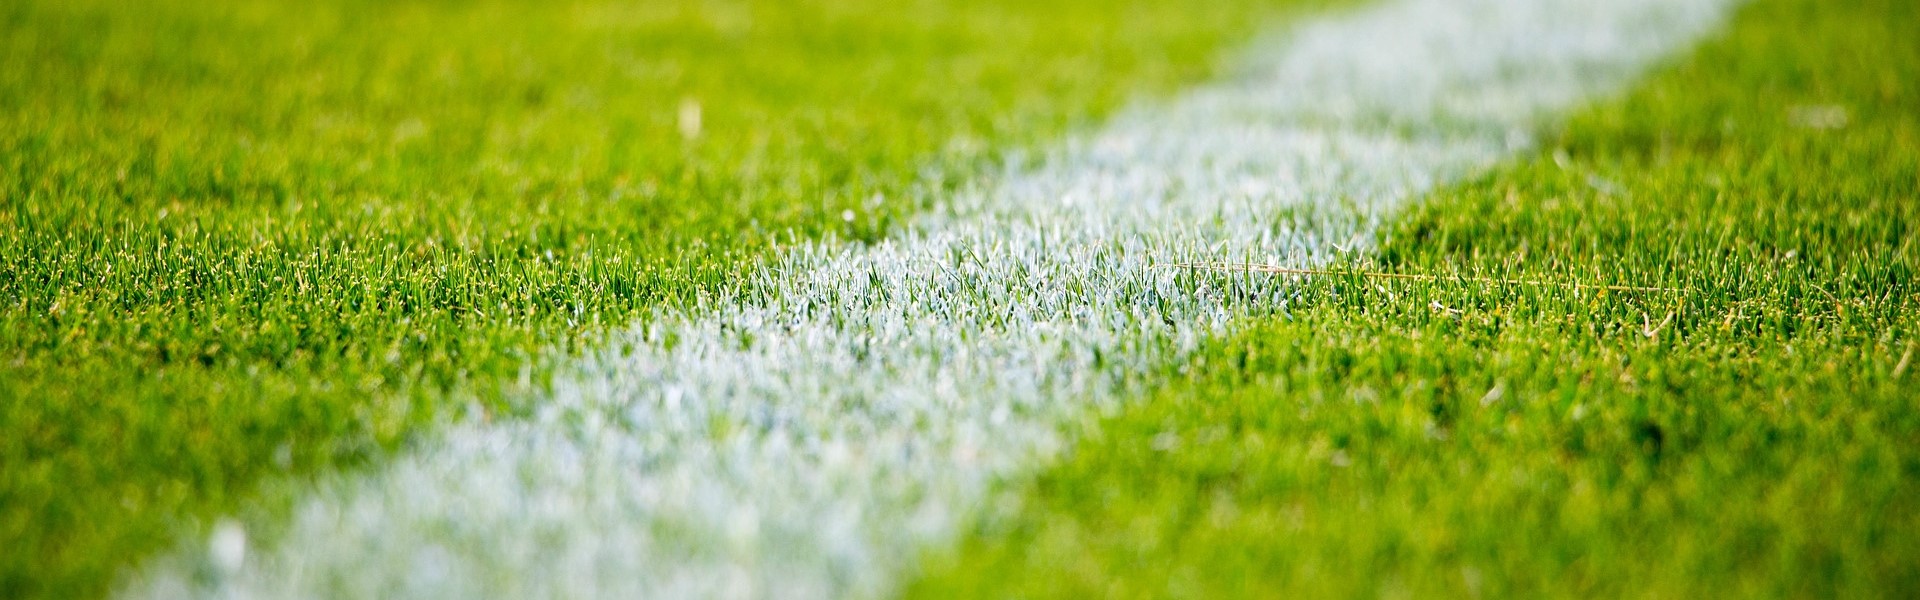 soccer ball on grassy field